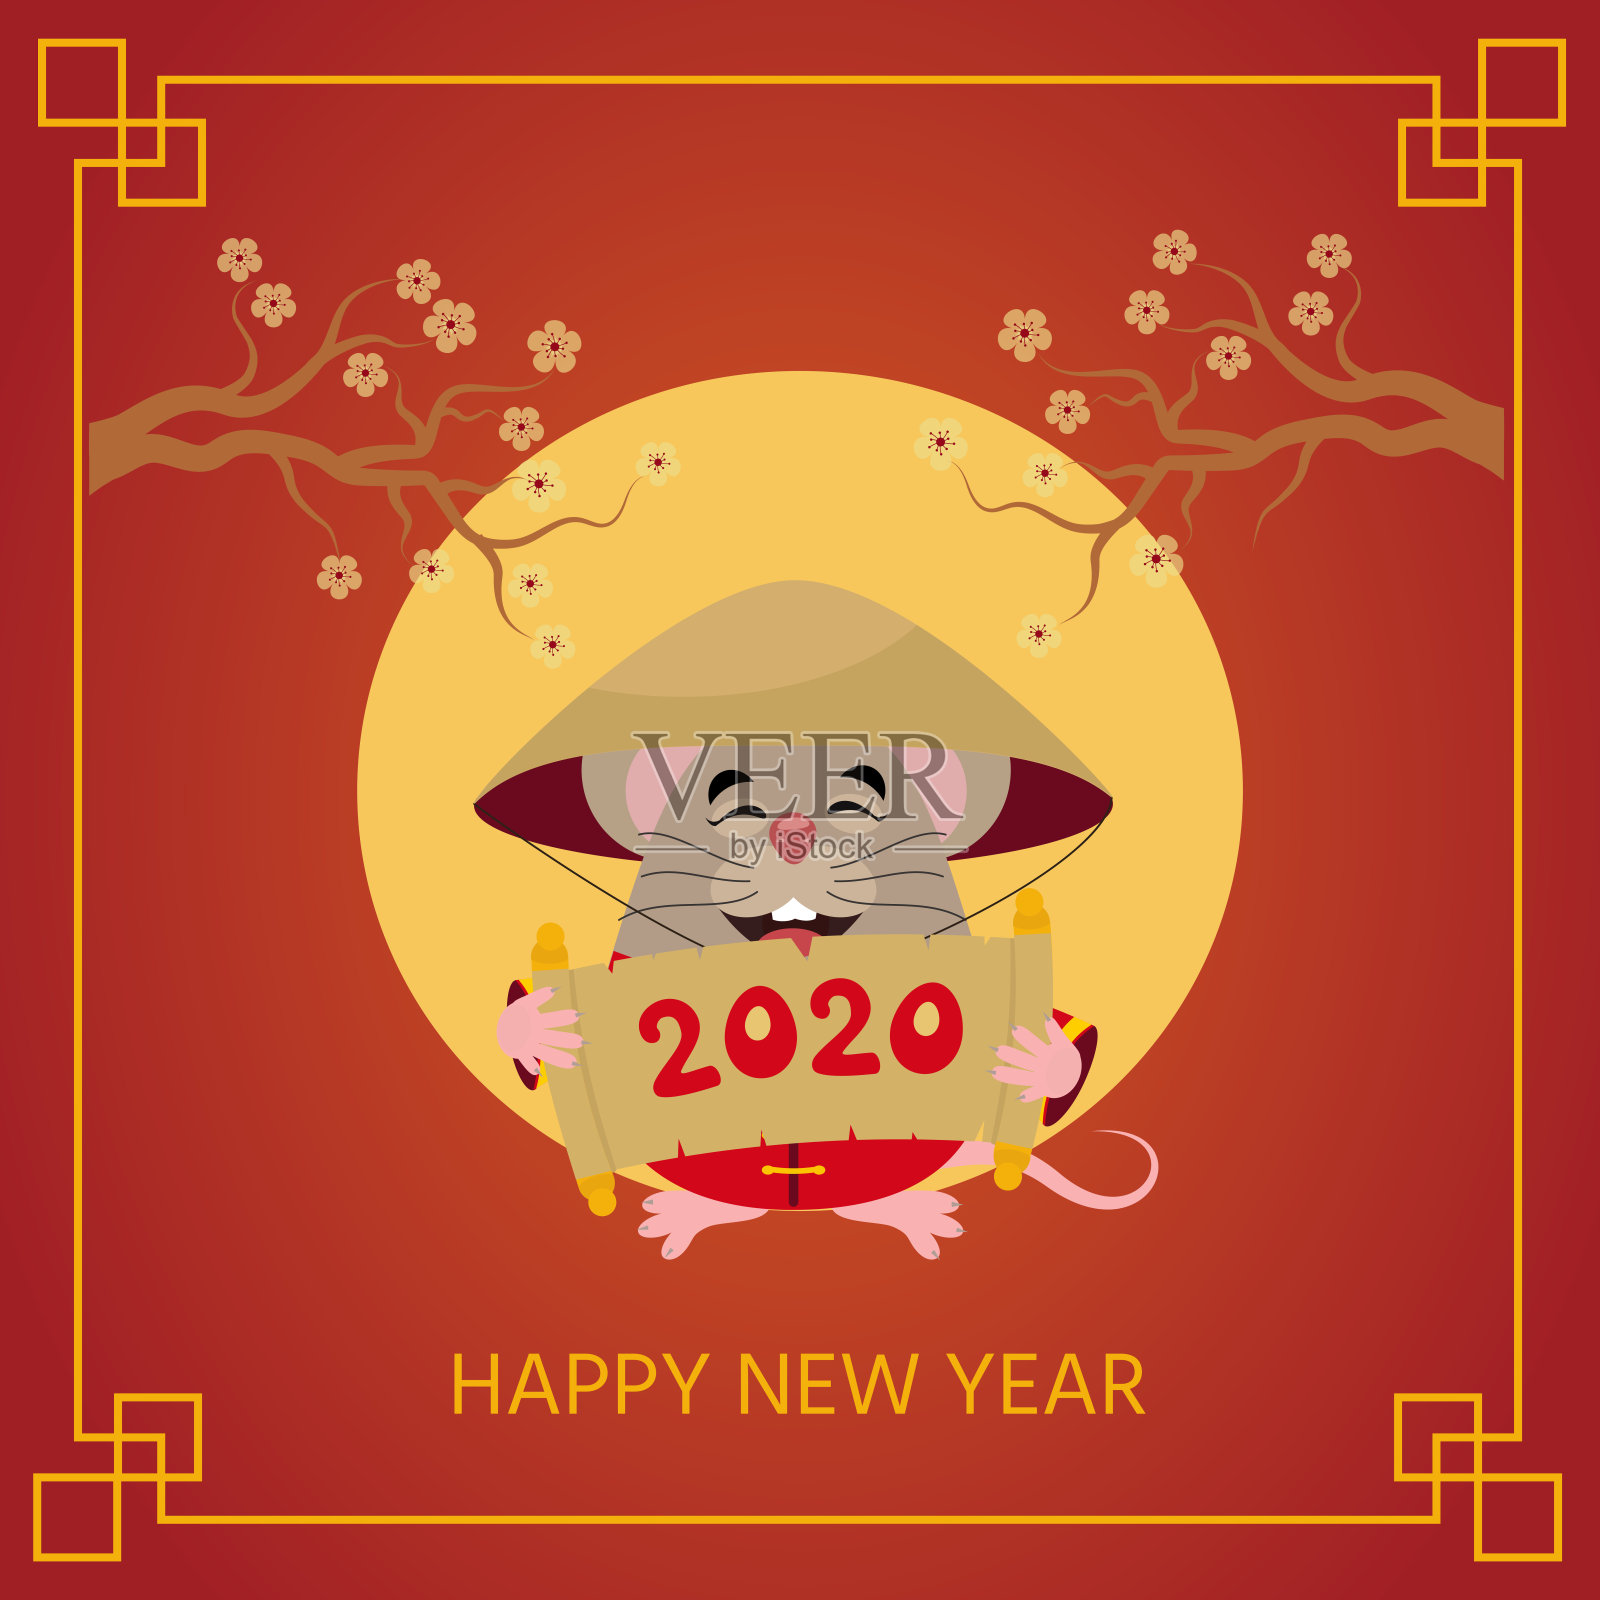 卡通可爱的小老鼠与传统的中国服装。鼠是中国2020年新年的象征。设计模板素材